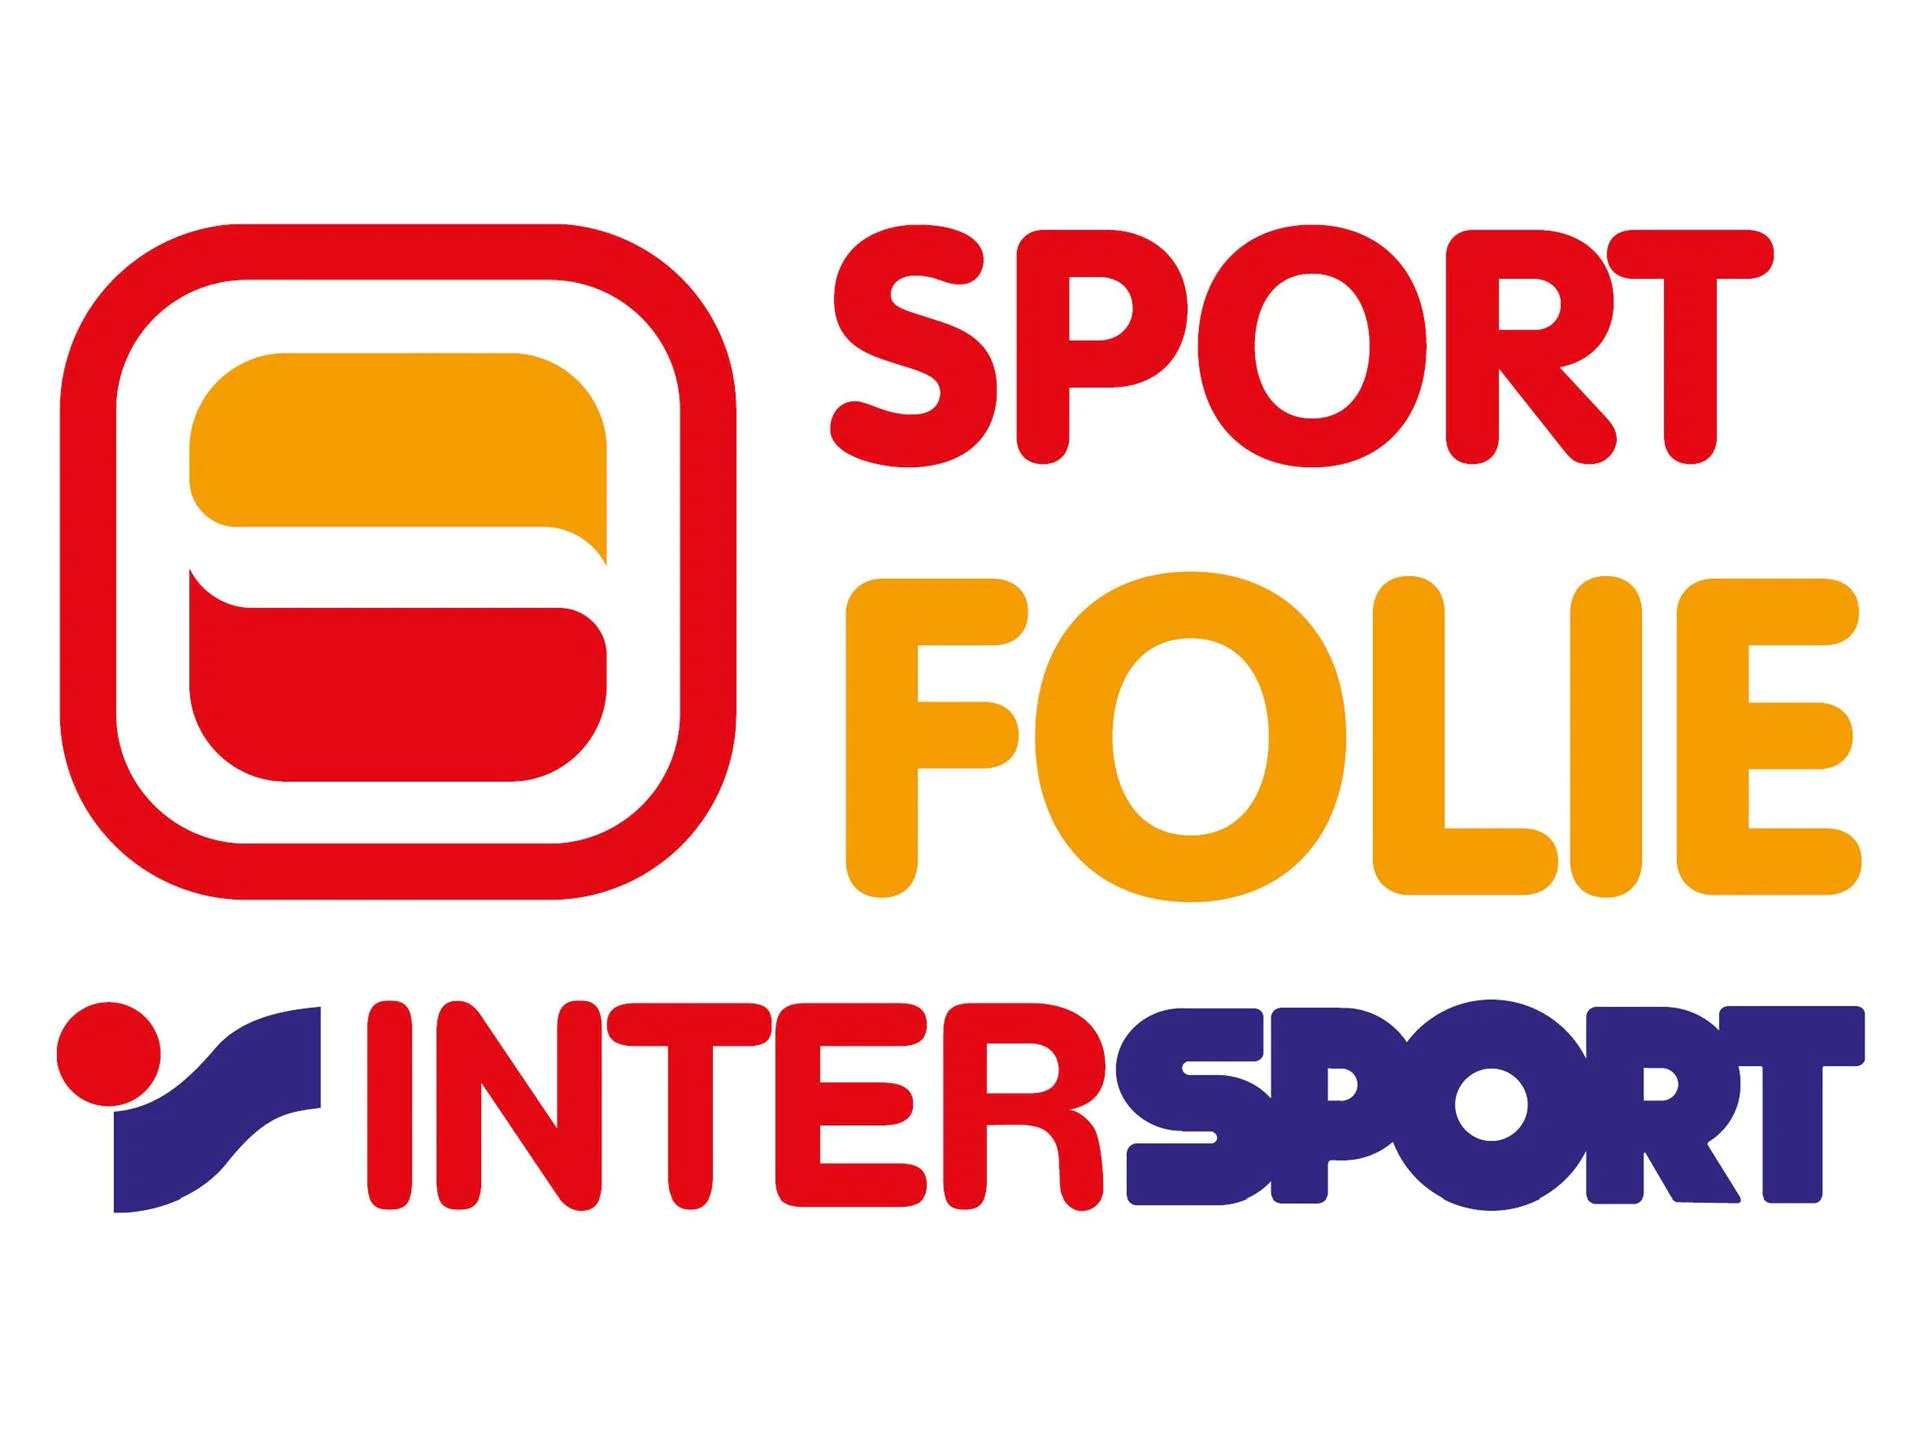 Intersport Folie  2 suedtirol.info